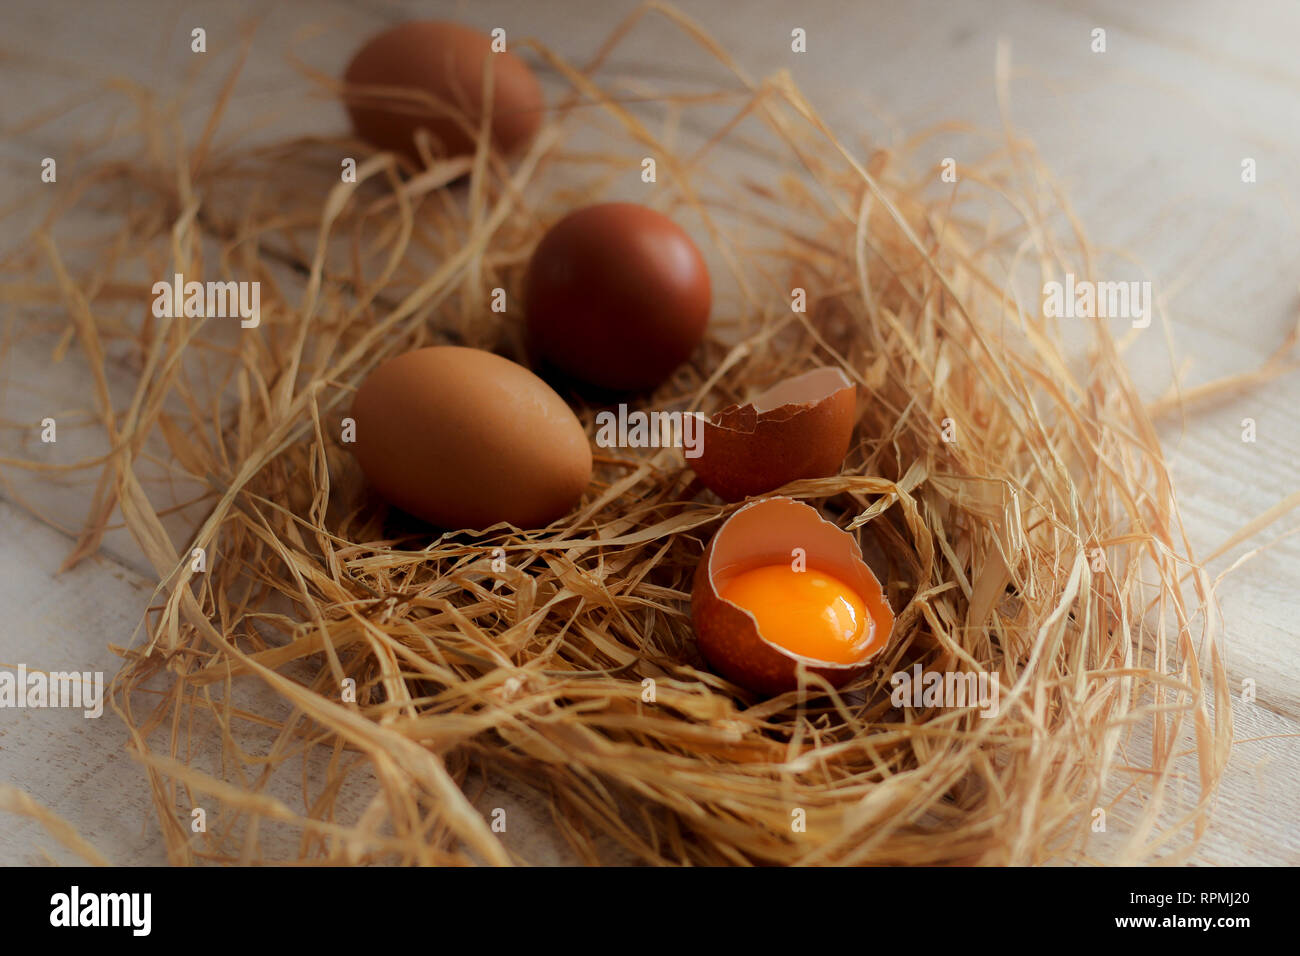 Eine Gruppe von Eiern und einem zerbrochenen Ei im Heu auf einem Holztisch Stockfoto